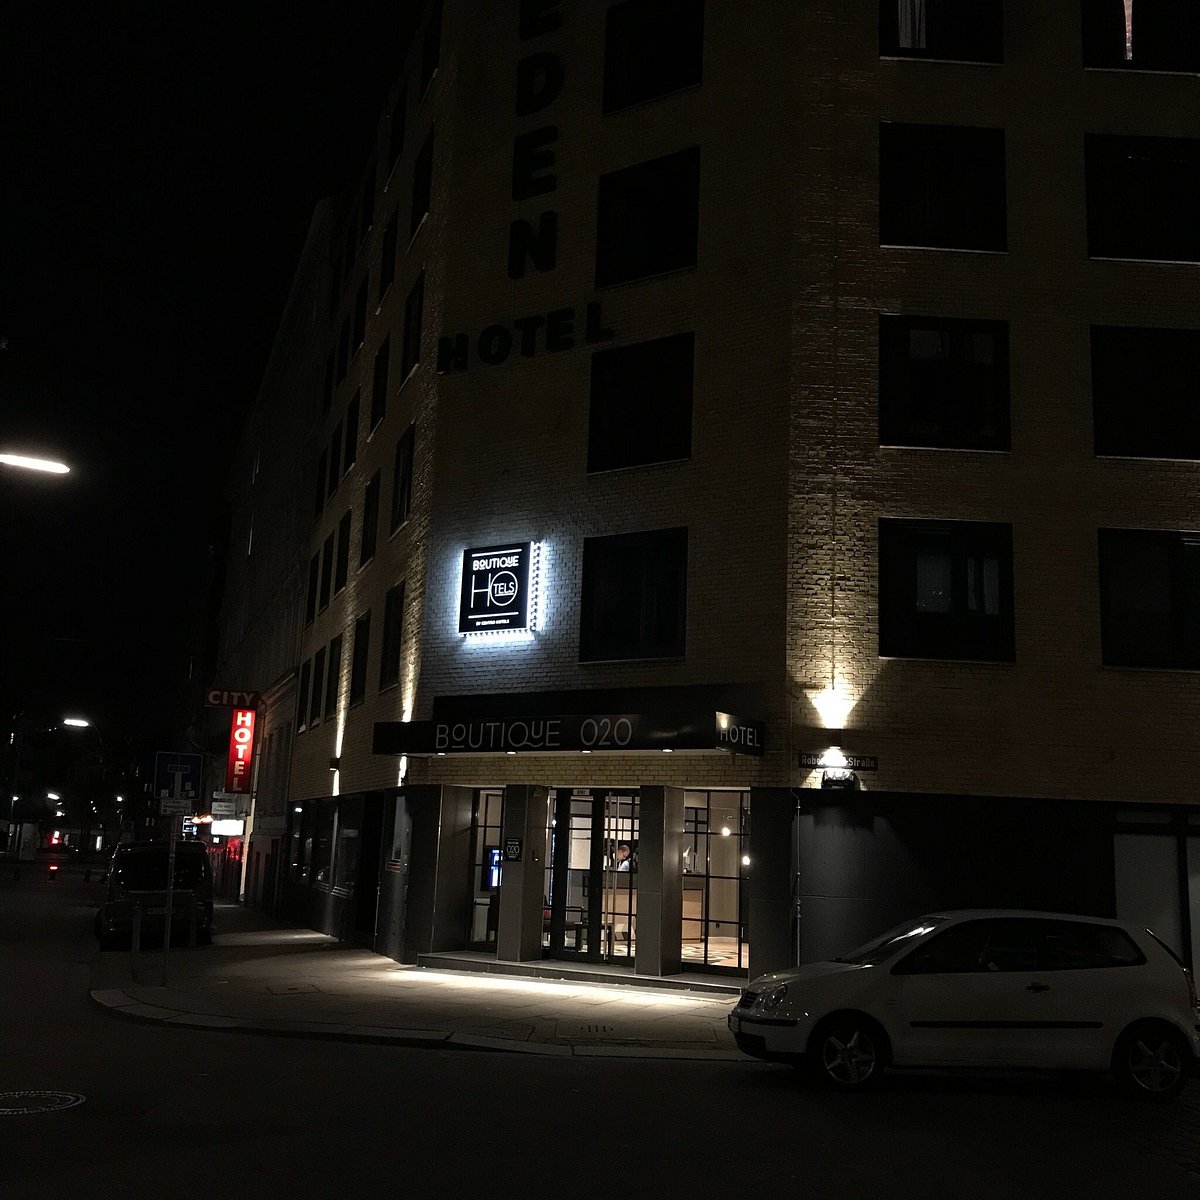 Centro Hotel Boutique 020, hotel in Hamburg